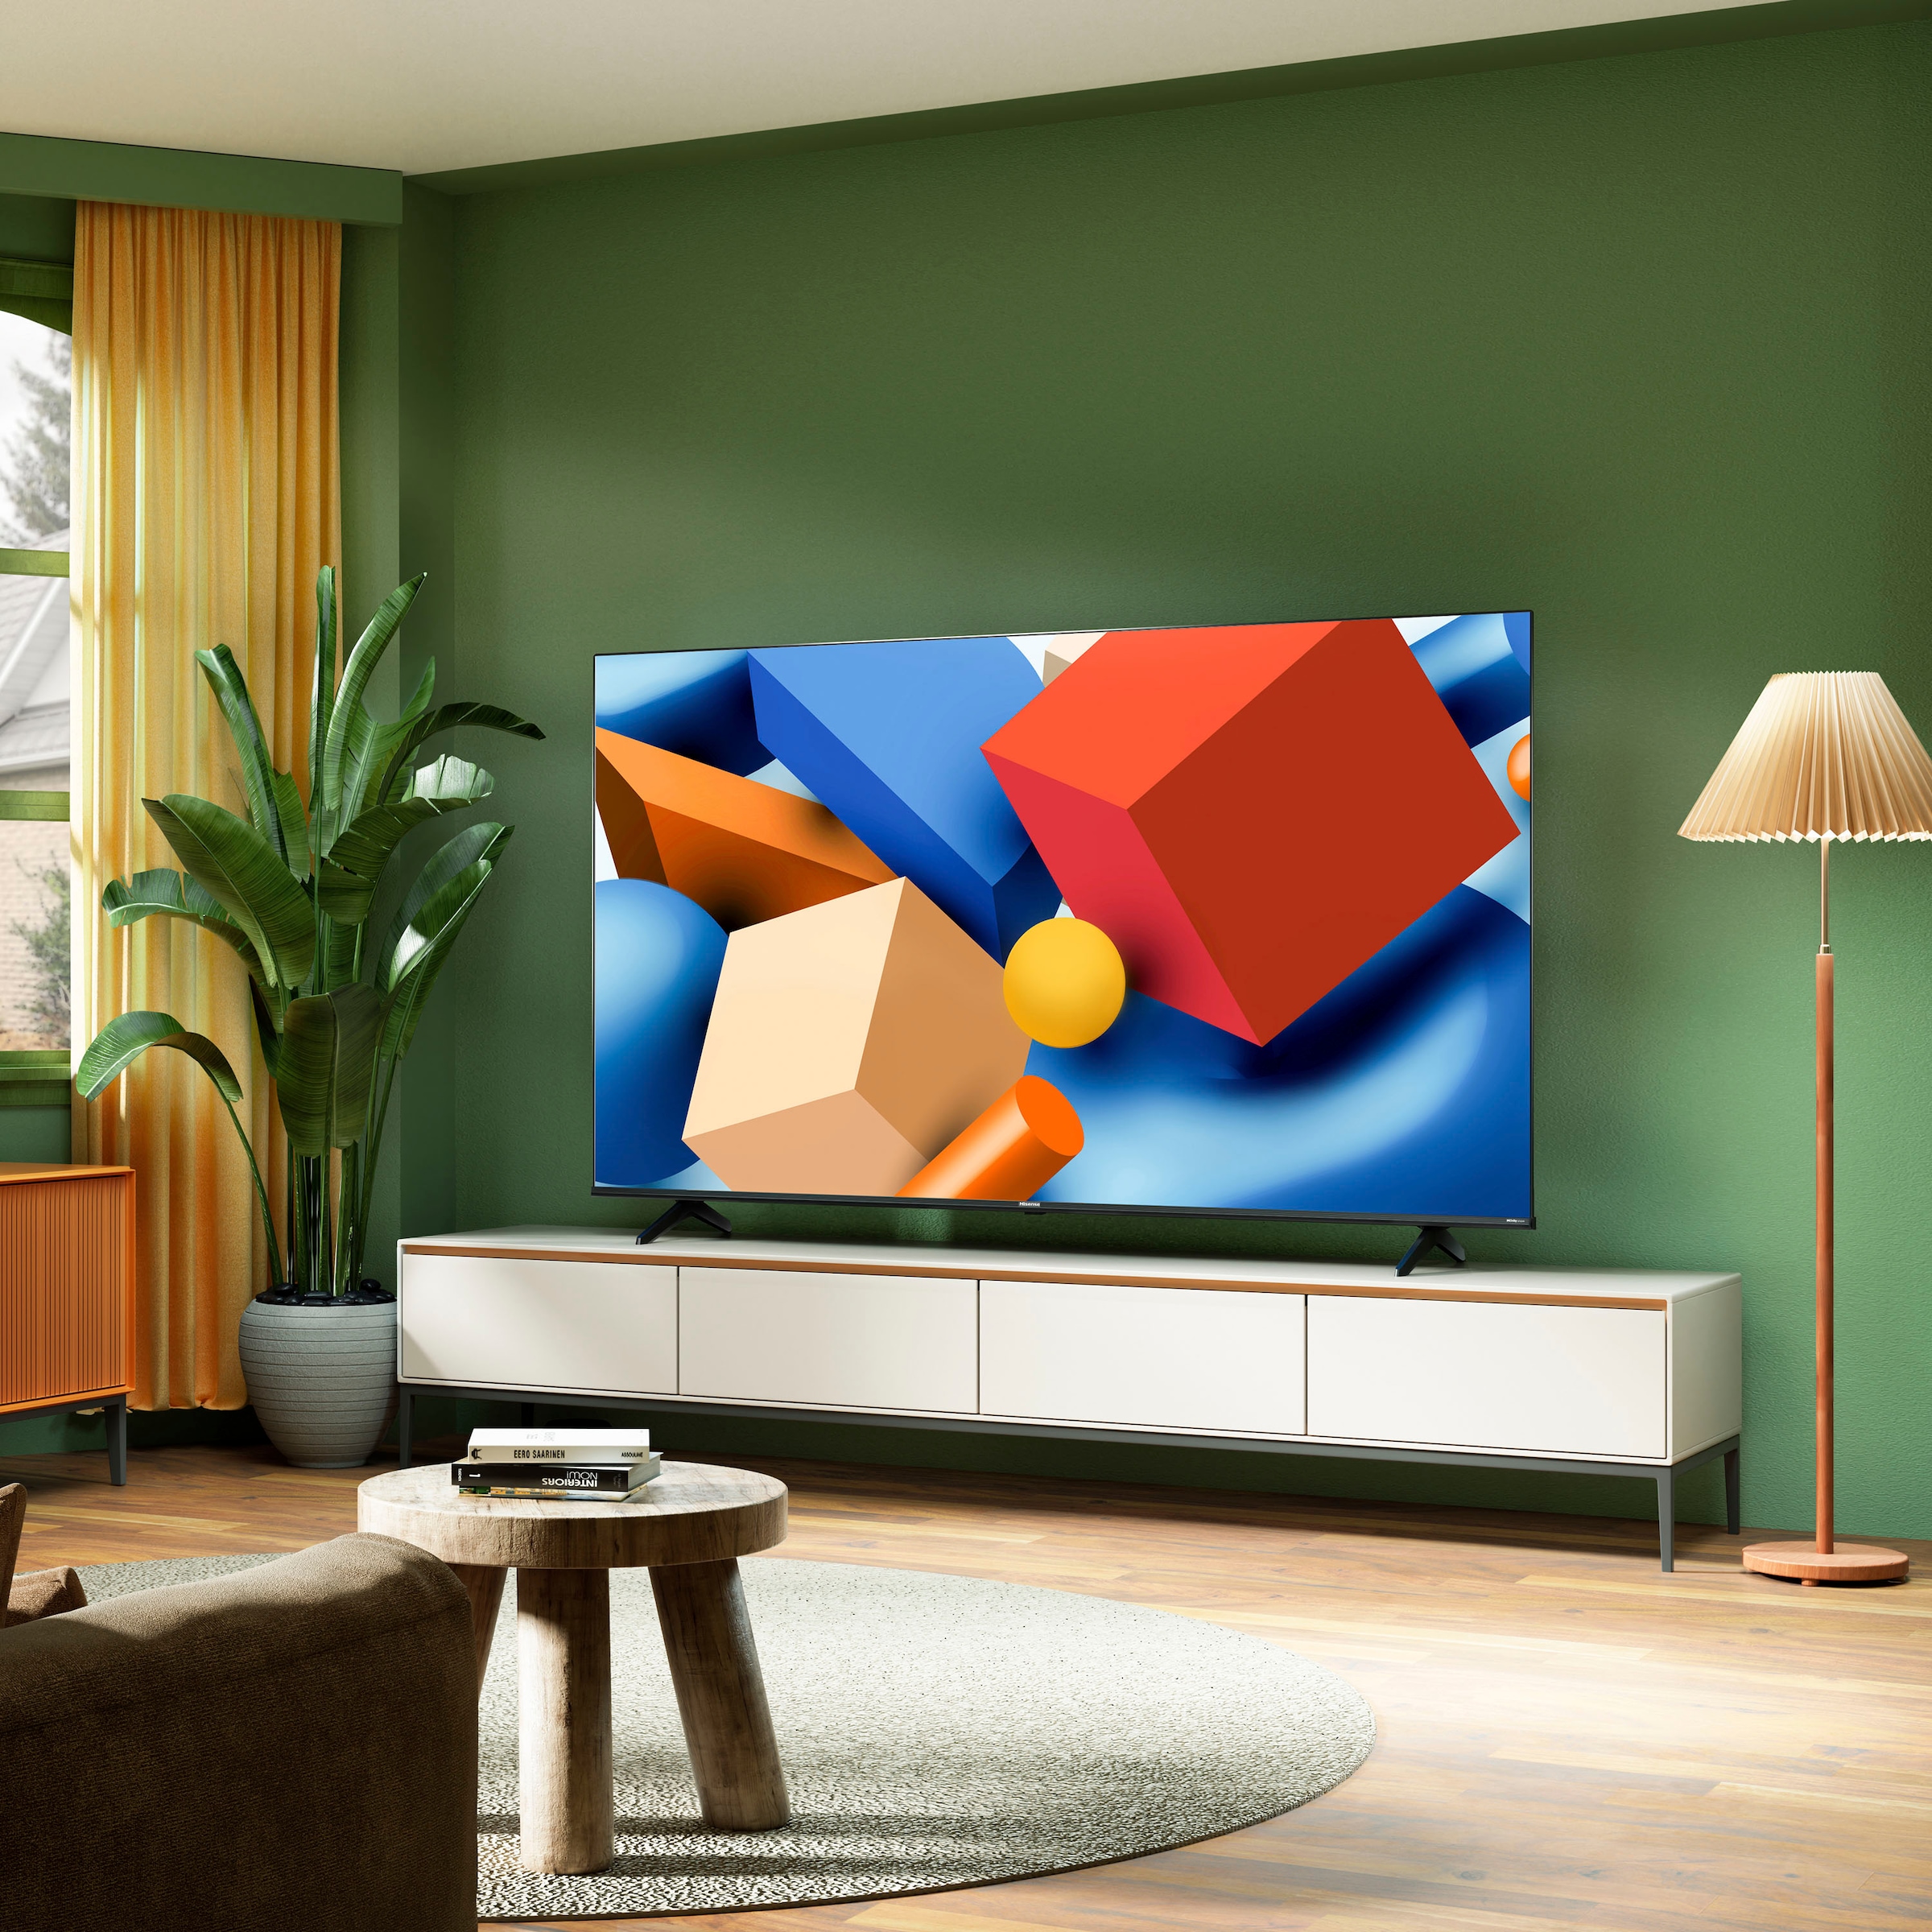 Hisense LED-Fernseher, 177,8 cm/70 Zoll, 4K Ultra HD, Smart-TV, Smart-TV, Dolby Vision, Triple Tuner DVB-C/S/S2/T/T2